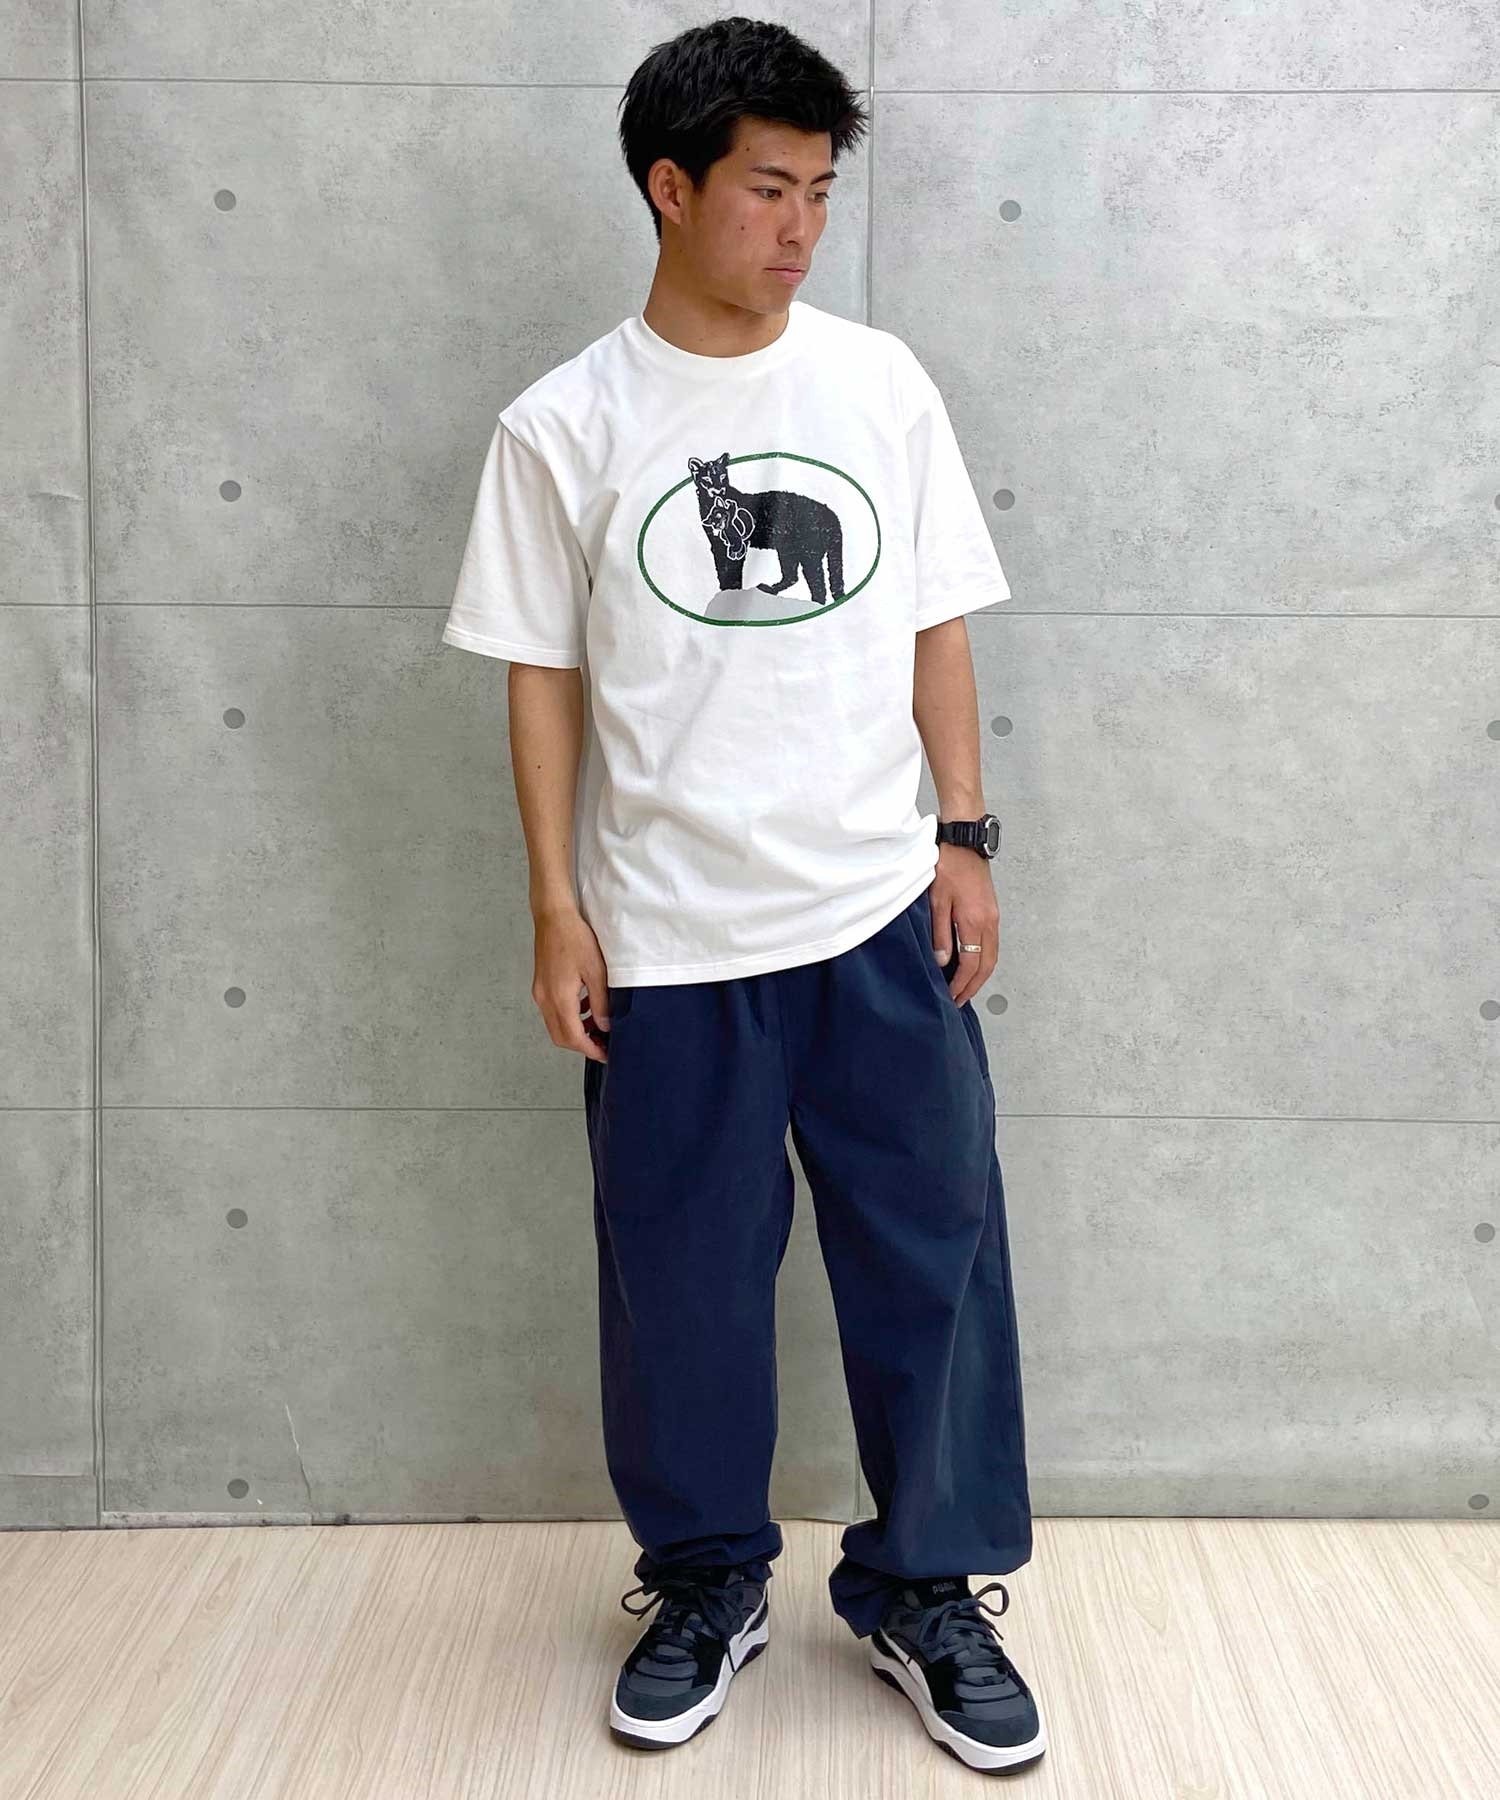 【マトメガイ対象】PUMA プーマ スケートボーディング スケートボード メンズ 半袖 Tシャツ 625696(63-M)